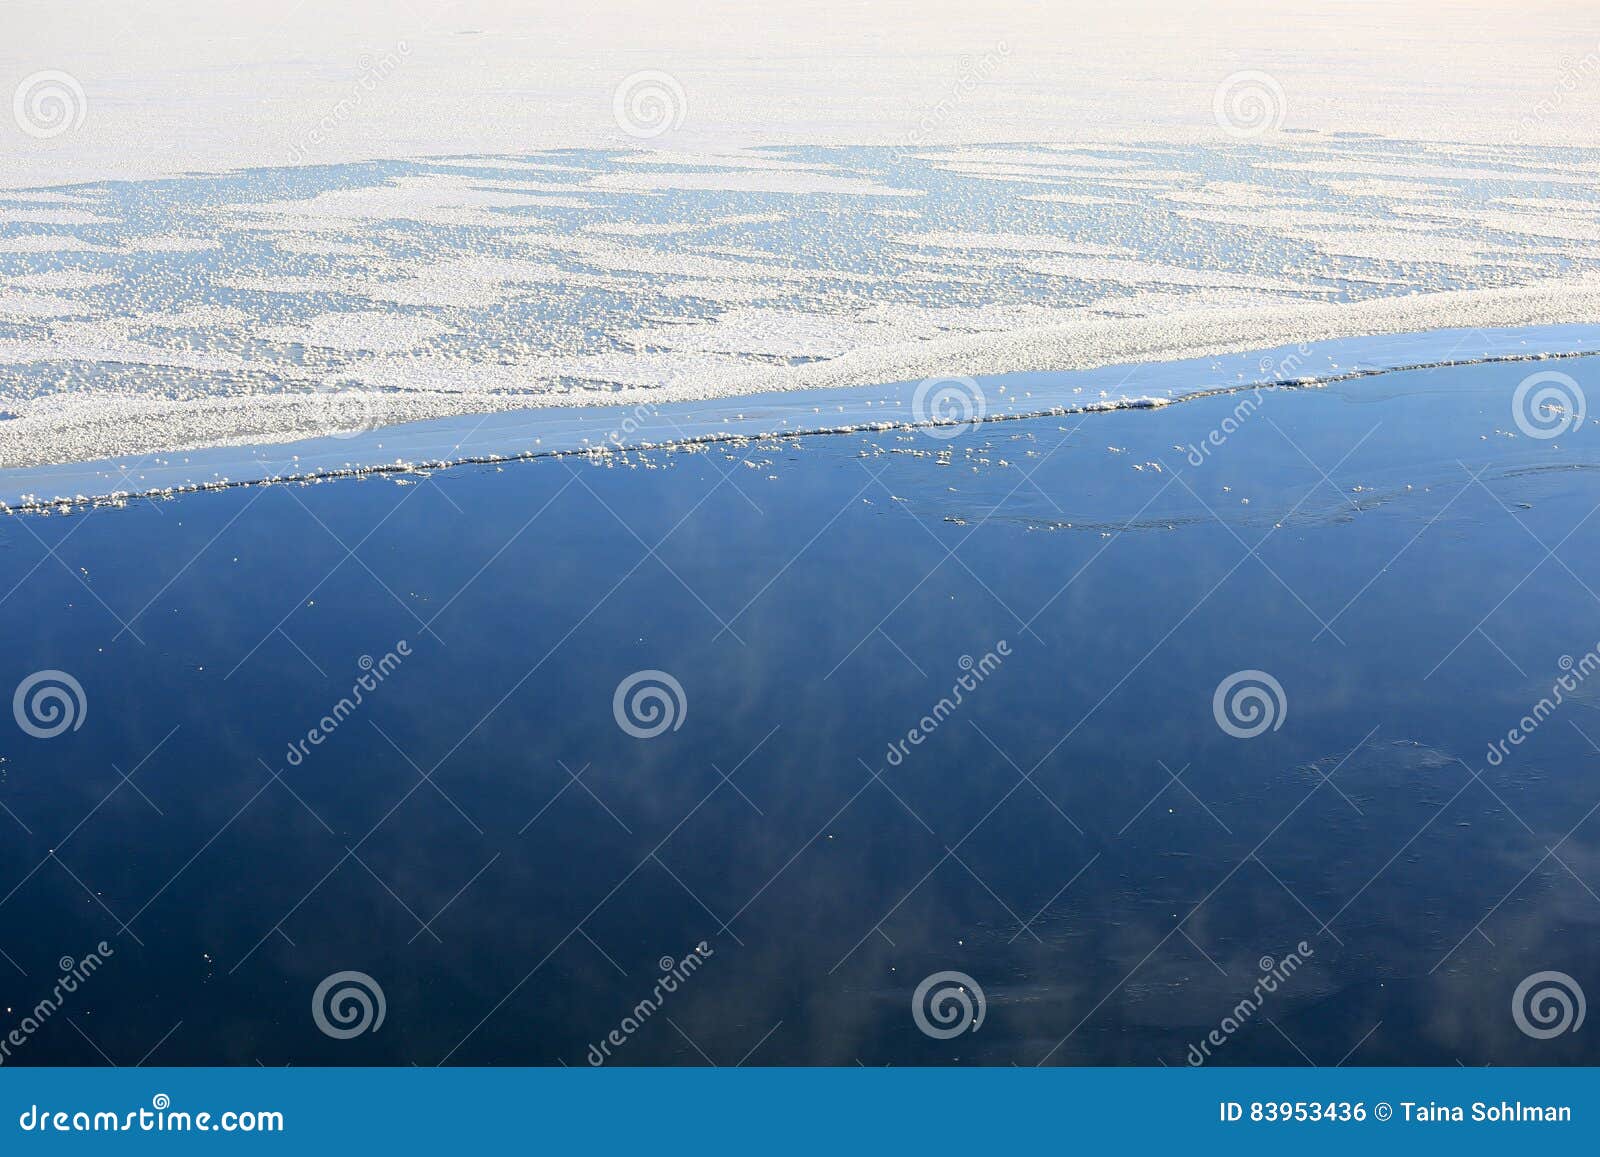 background of vaporizing, freezing blue sea